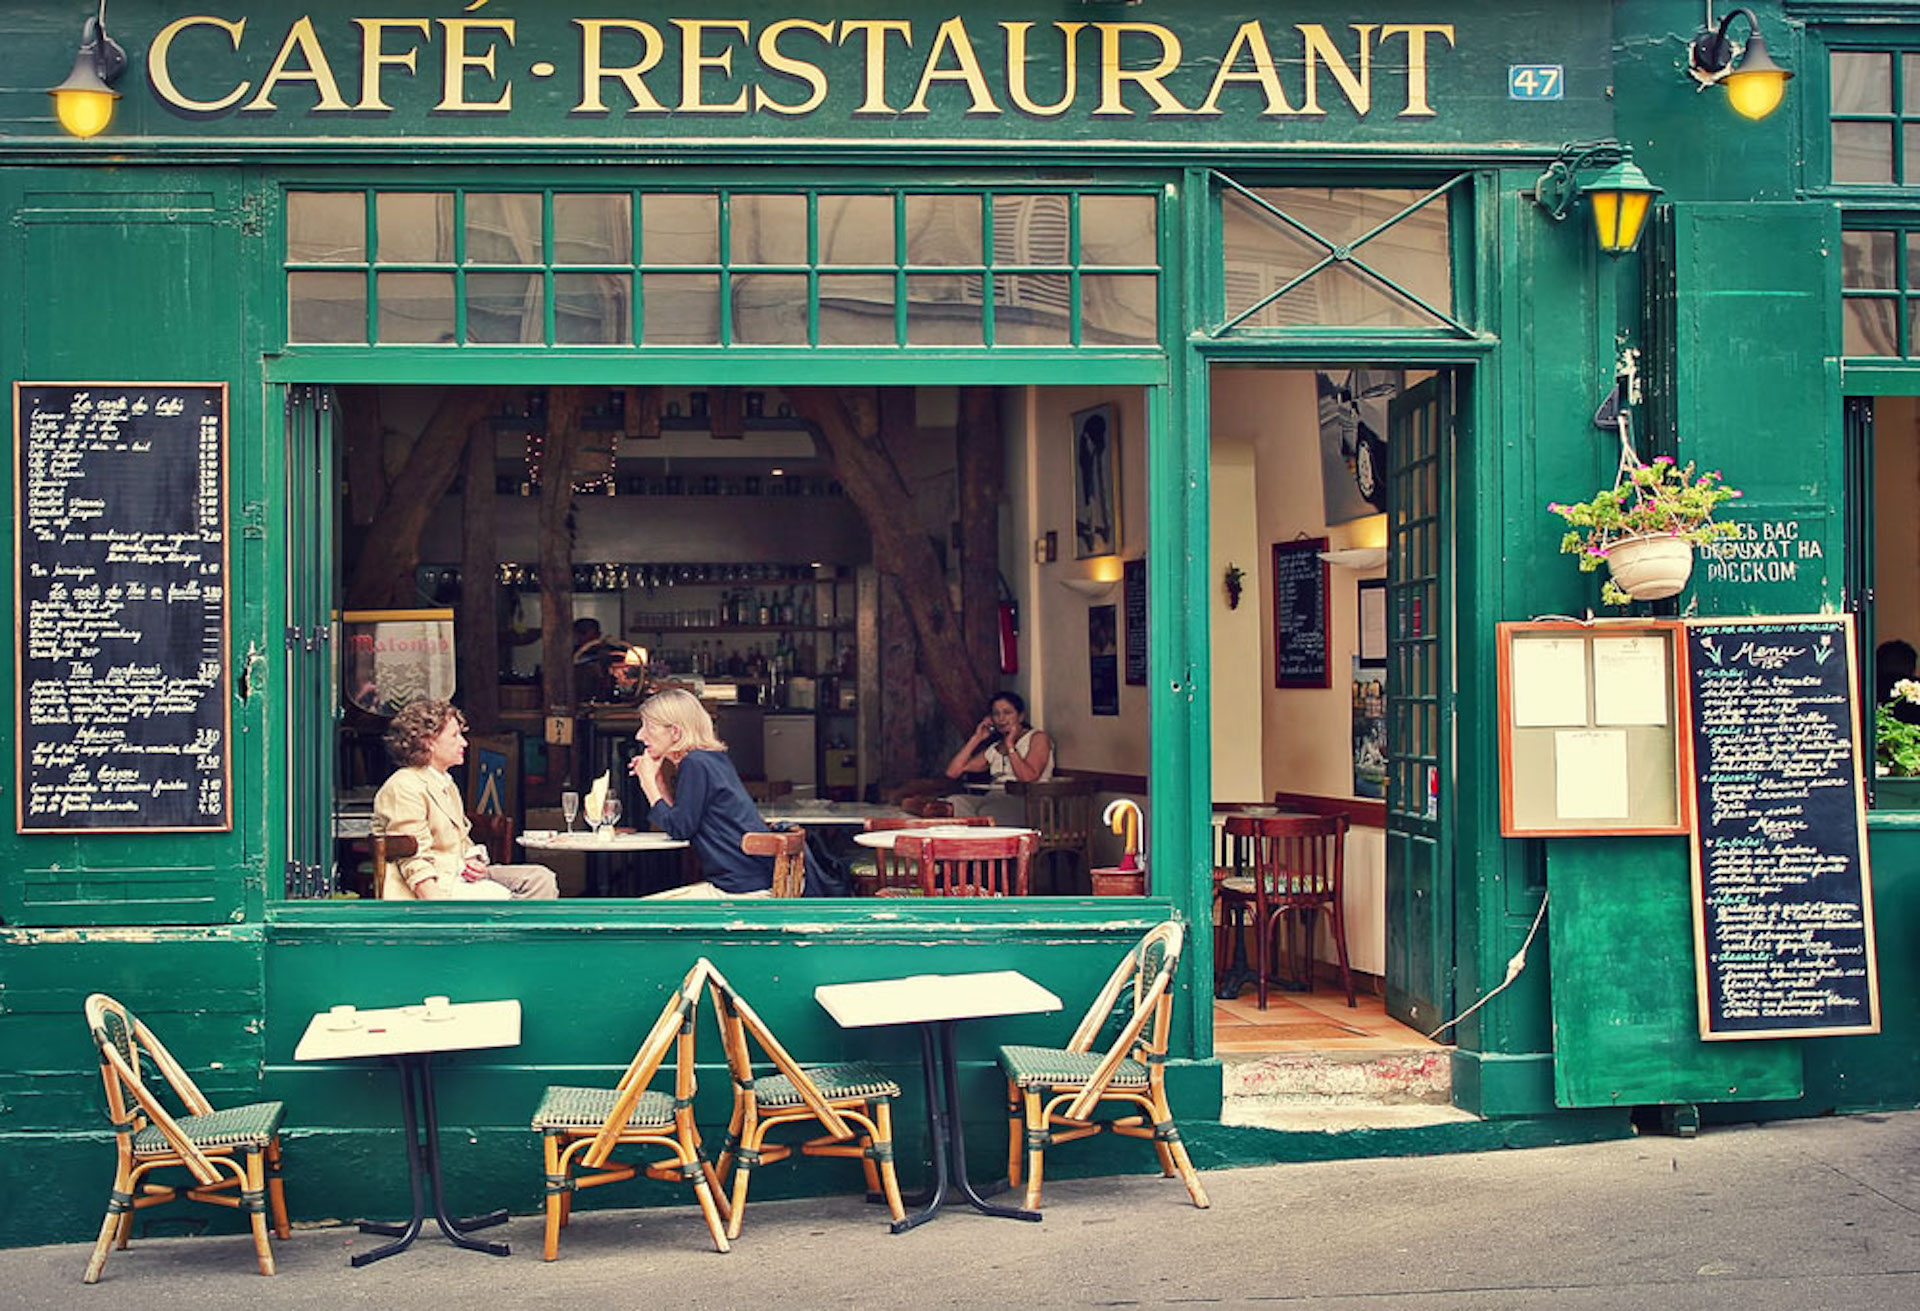 Ir à Paris e não passar um tempinho em um café é perder uma grande oportunidade. Ter momentos descontraídos, batendo papo, vendo o movimento e respirando o ar parisiense não tem preço/GB Imagem